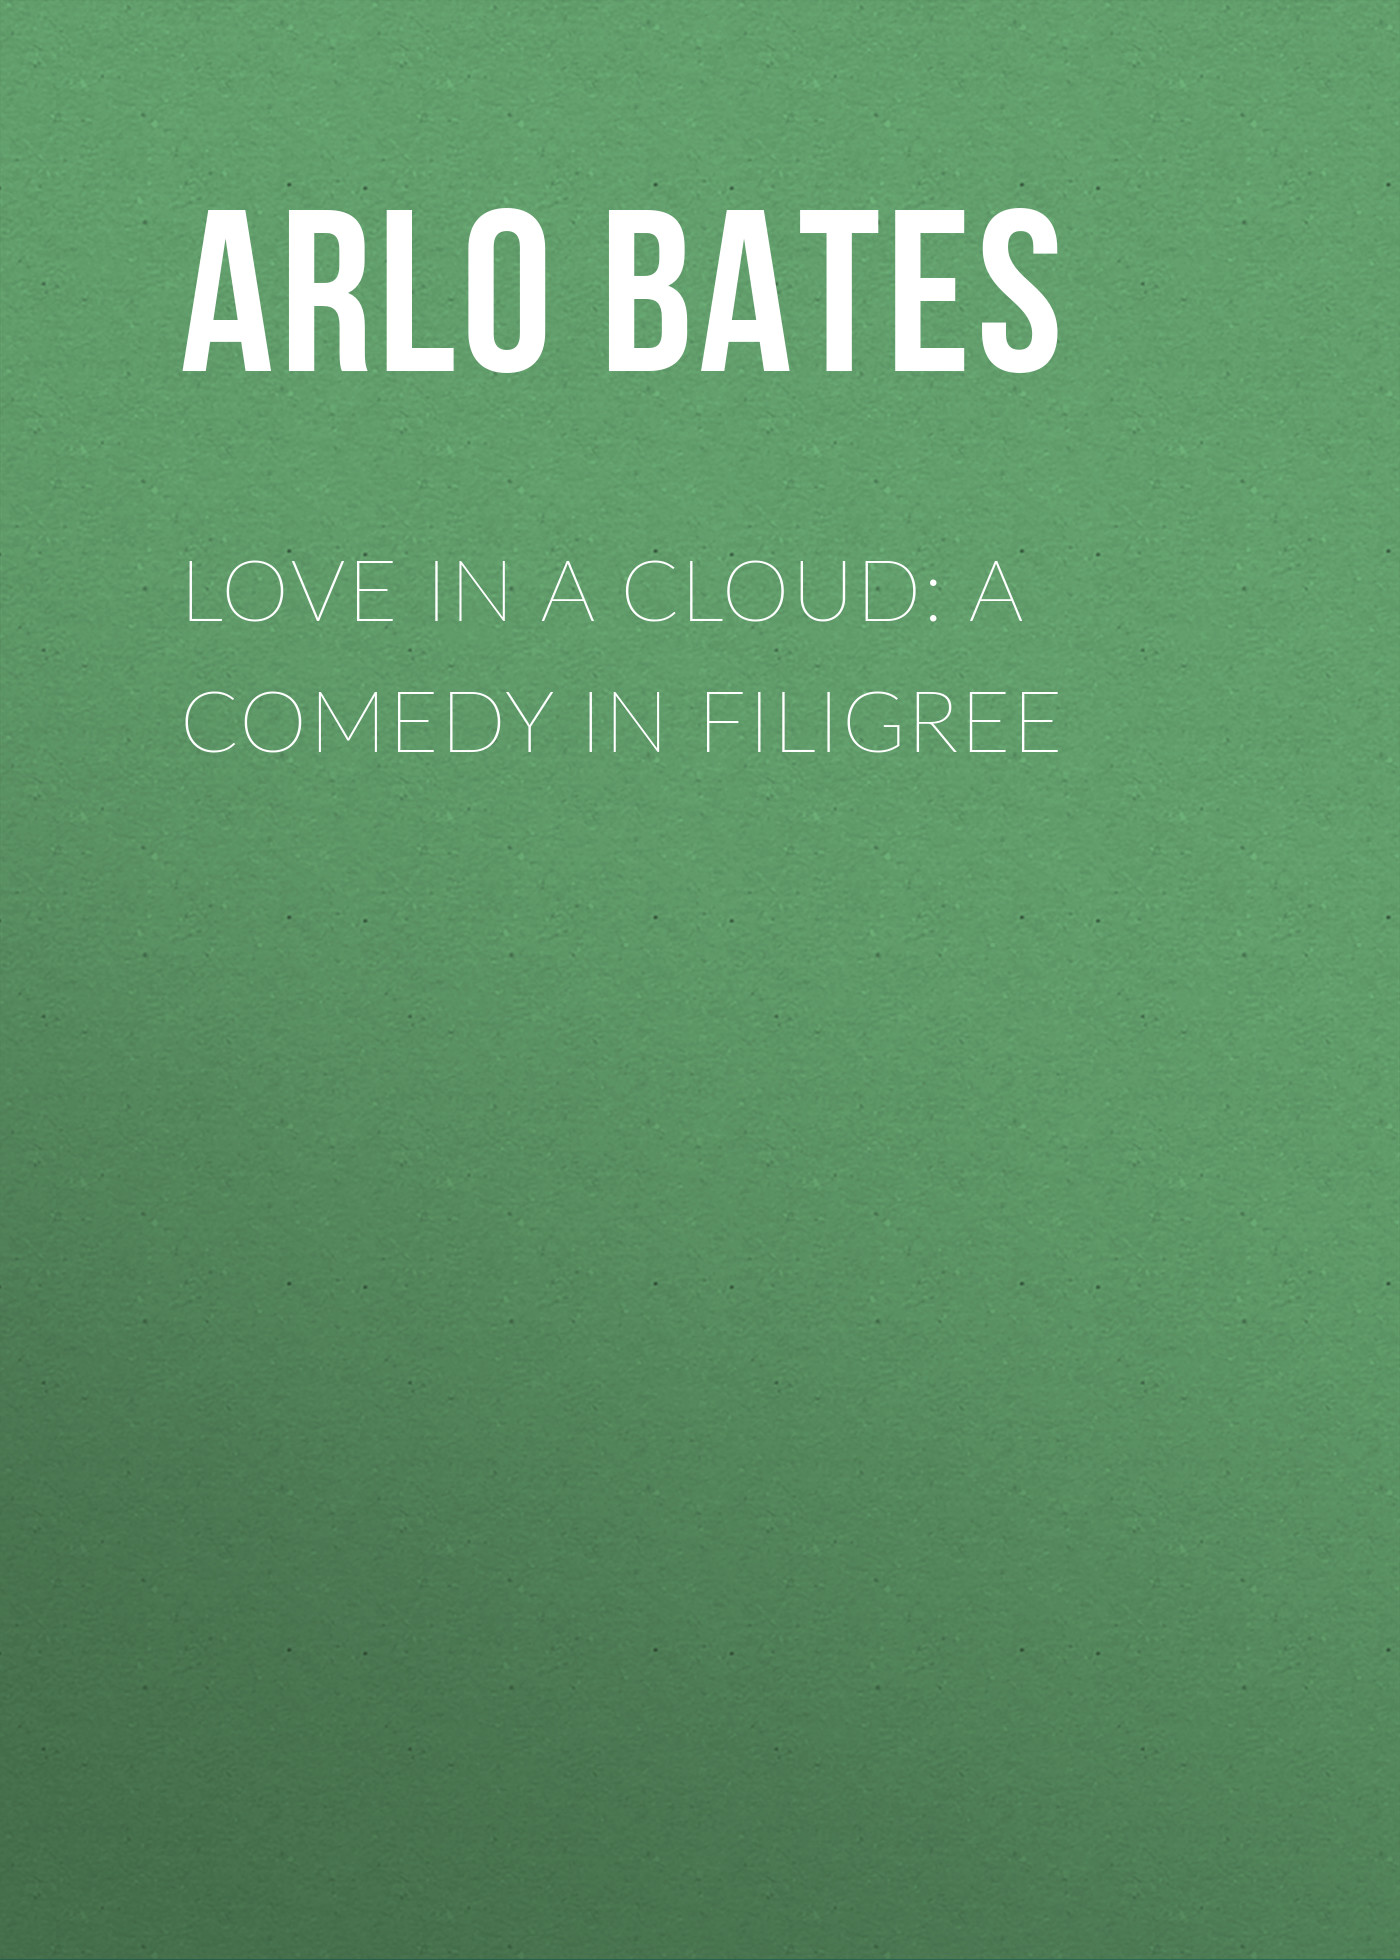 Книга Love in a Cloud: A Comedy in Filigree из серии , созданная Arlo Bates, может относится к жанру Зарубежная старинная литература, Зарубежная классика. Стоимость электронной книги Love in a Cloud: A Comedy in Filigree с идентификатором 24165628 составляет 0.90 руб.